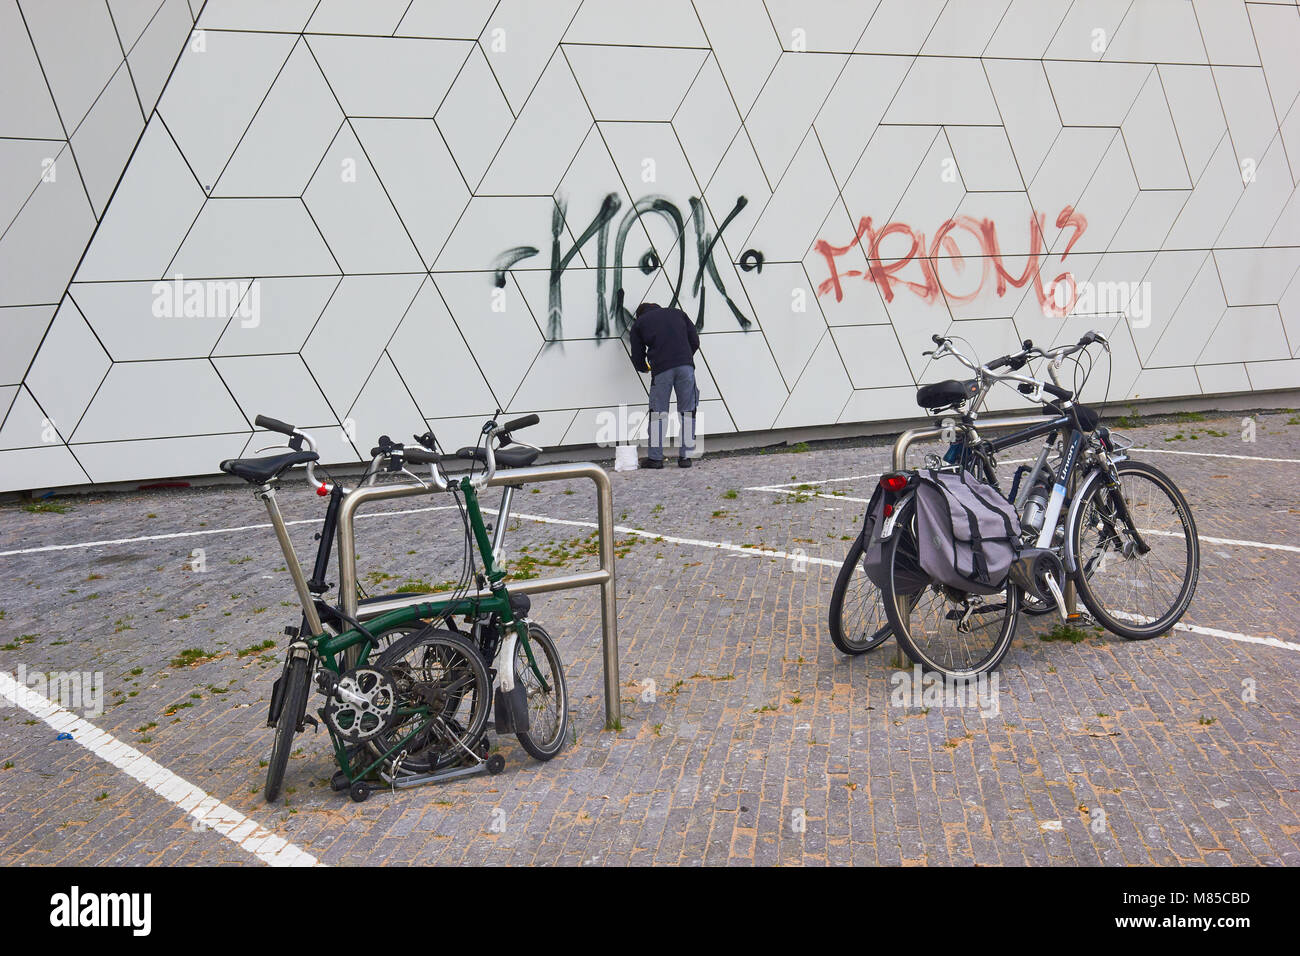 L'uomo rimozione di graffiti, occhio Film Instittute, Overhoeks, Amsterdam-Noord, Amsterdam, Paesi Bassi. Foto Stock